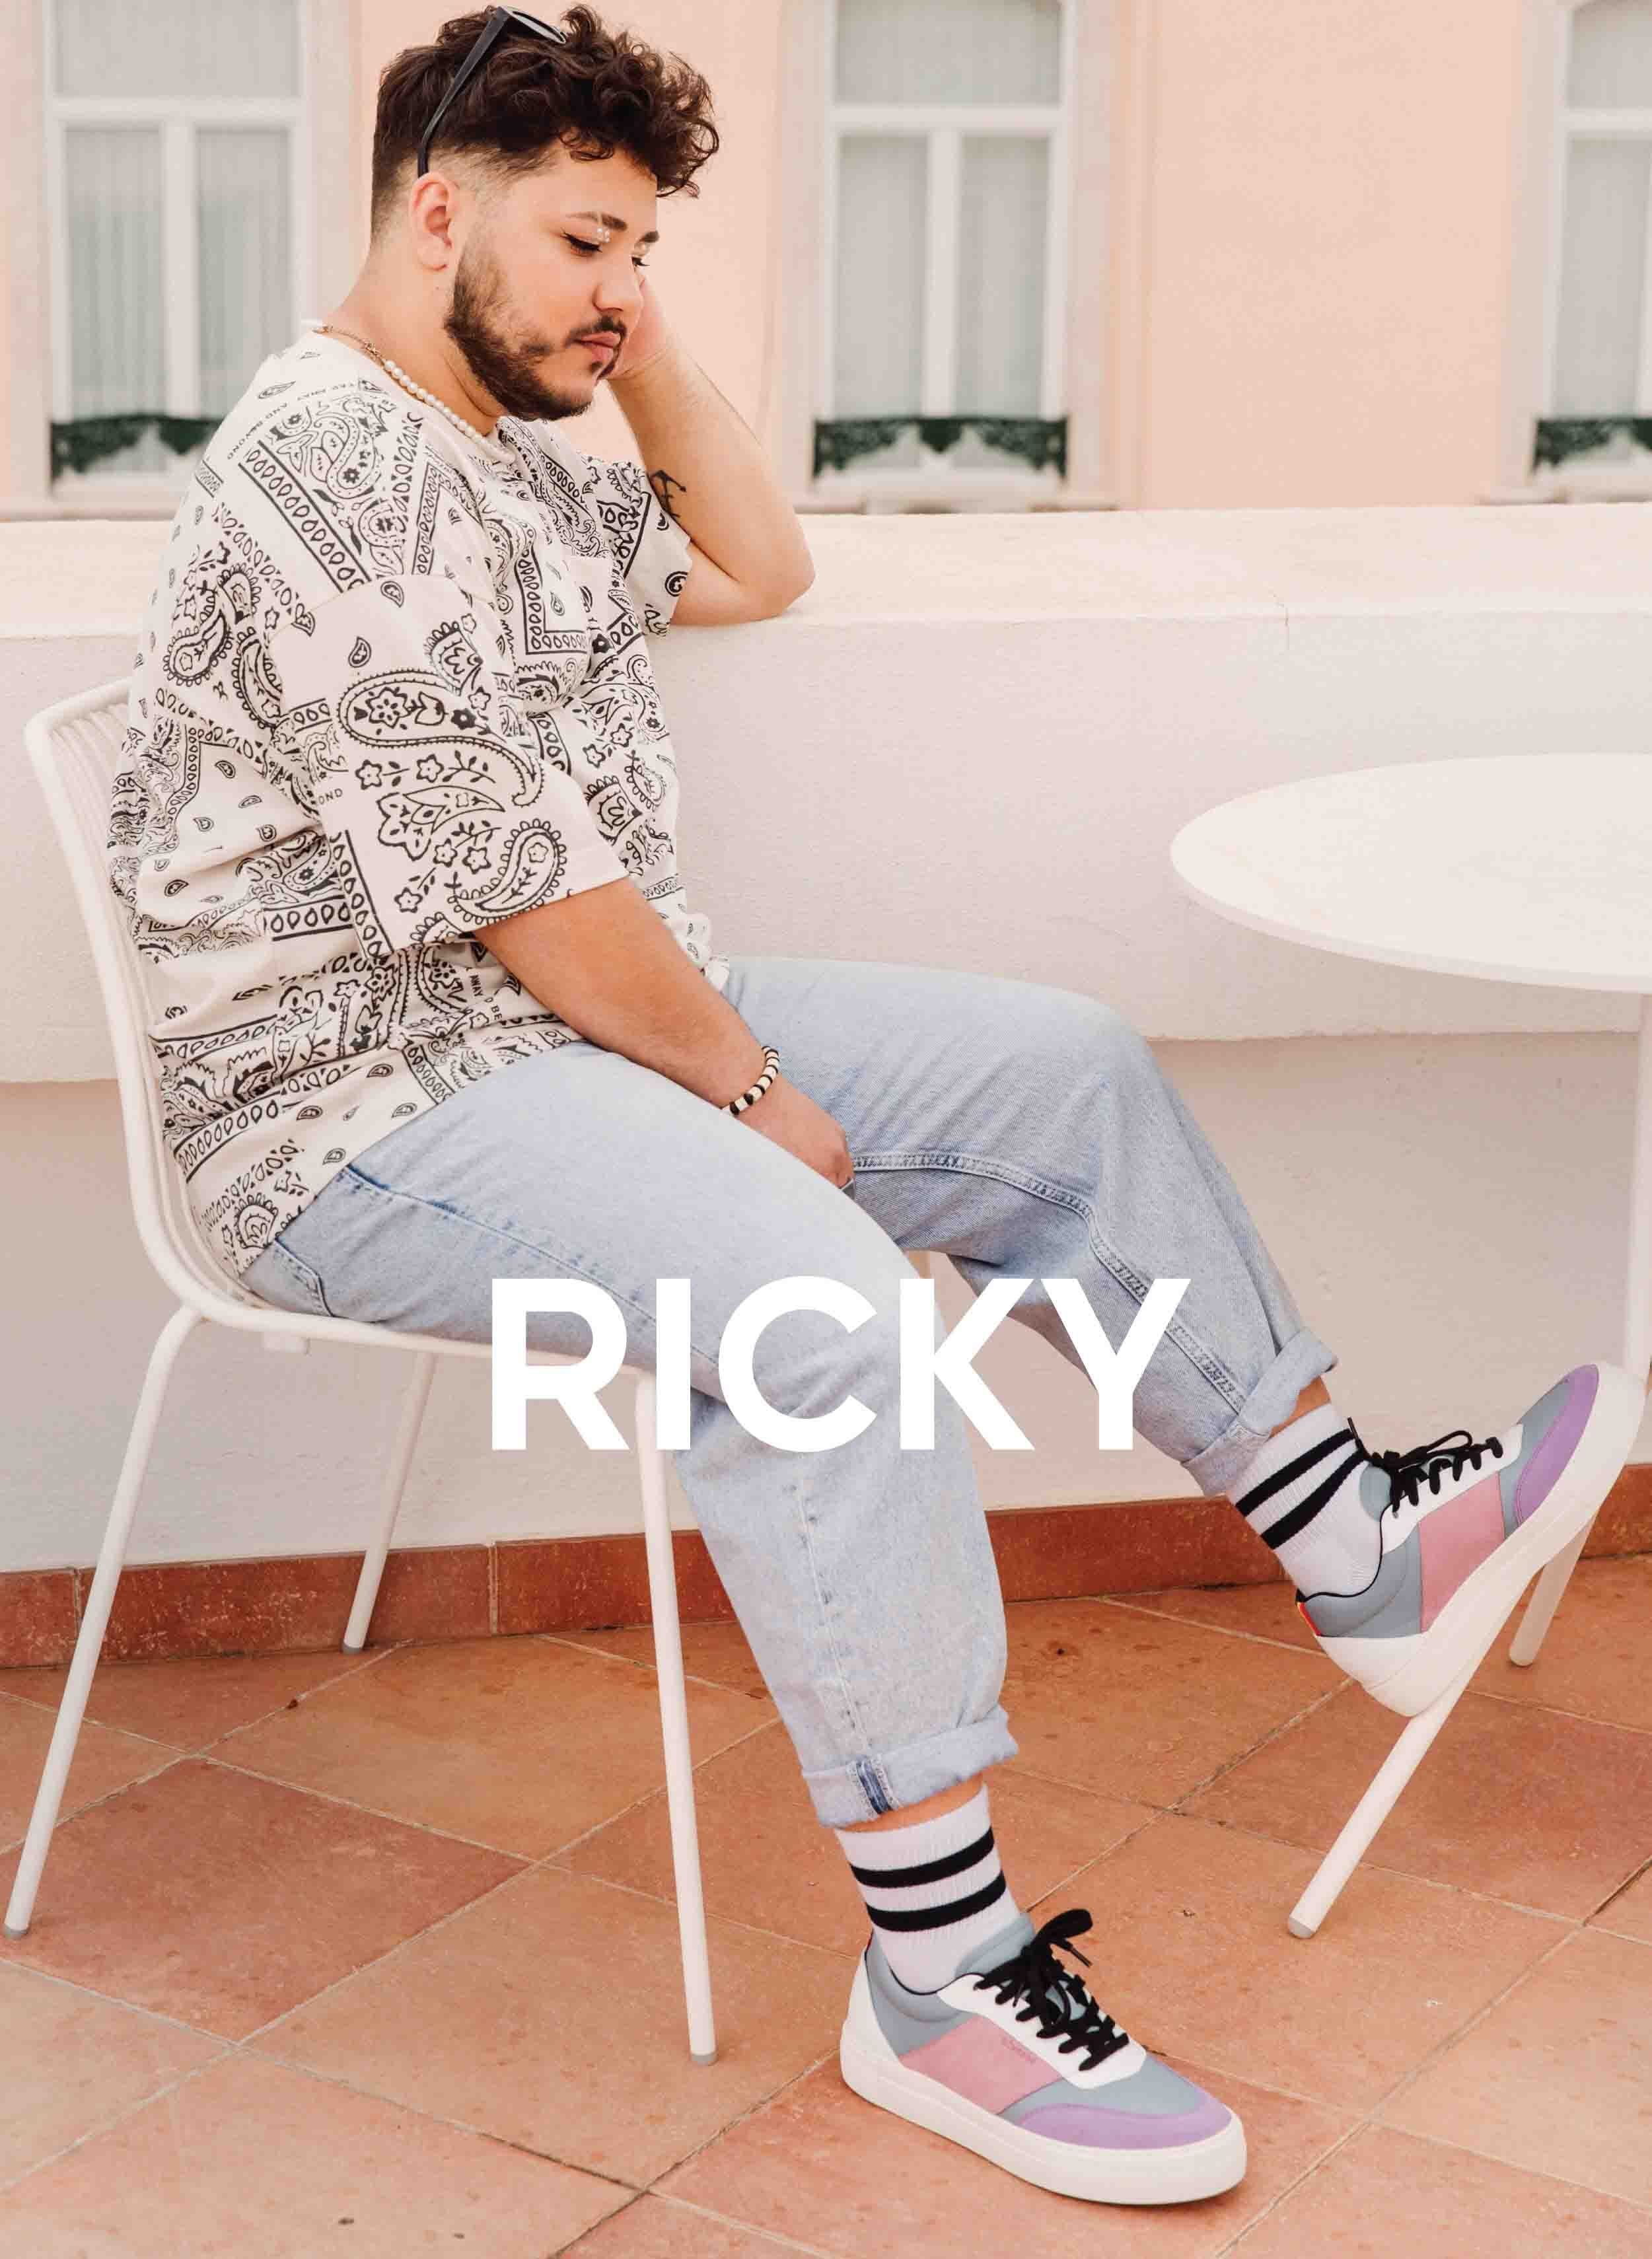 Ricky seduto su una sedia a guardare la sua abitudine Diverge sneakers, promuovendo l'impatto sociale e le scarpe personalizzate attraverso il progetto Imagine.   